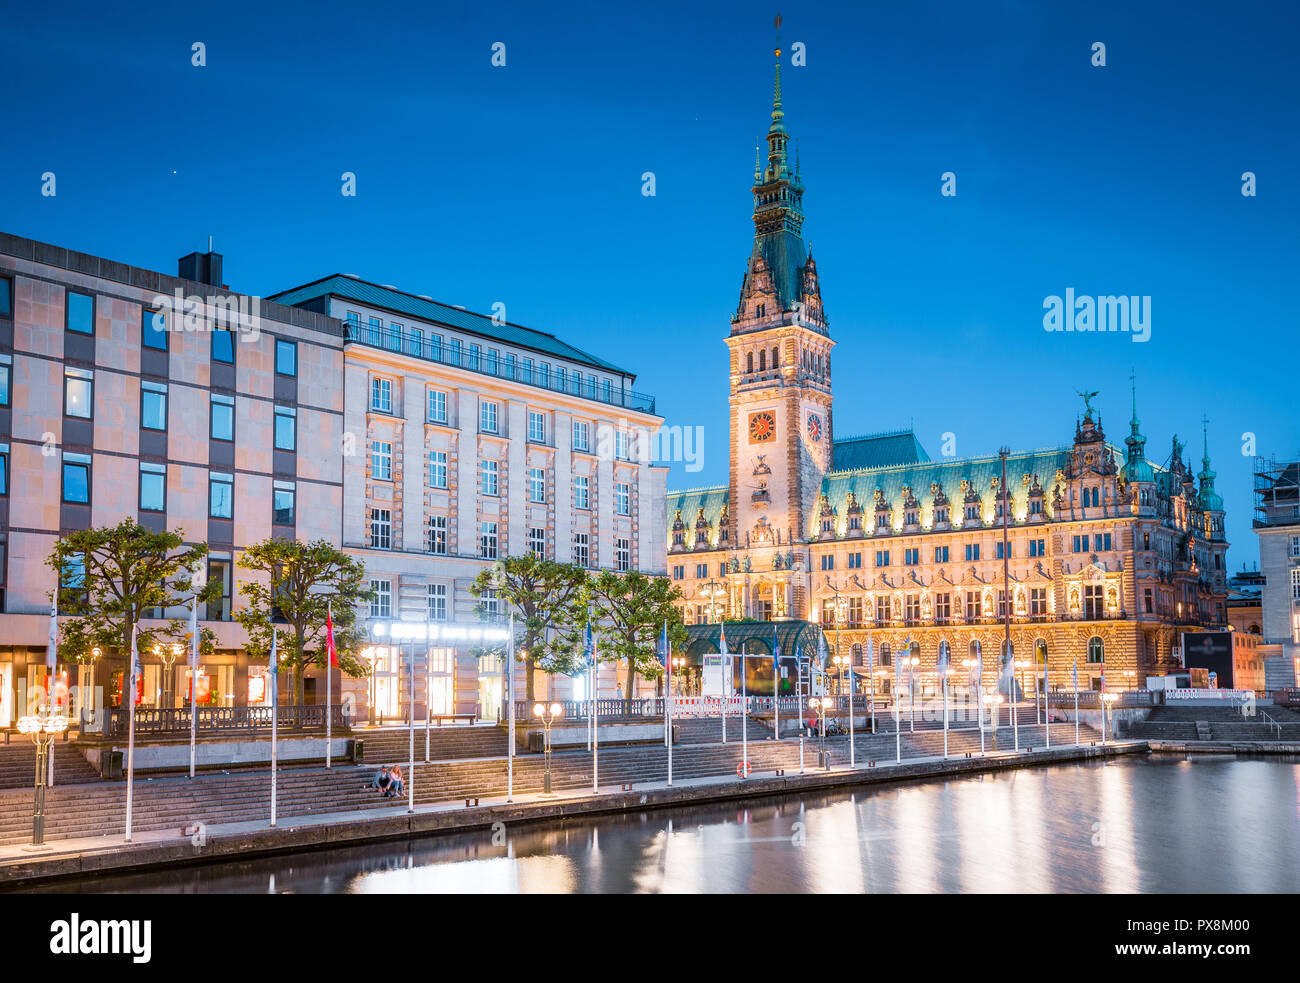 Crepúsculo clásica vista del centro de la ciudad de Hamburgo con el histórico ayuntamiento reflejando en el Binnenalster durante la hora azul al atardecer, Alemania Foto de stock